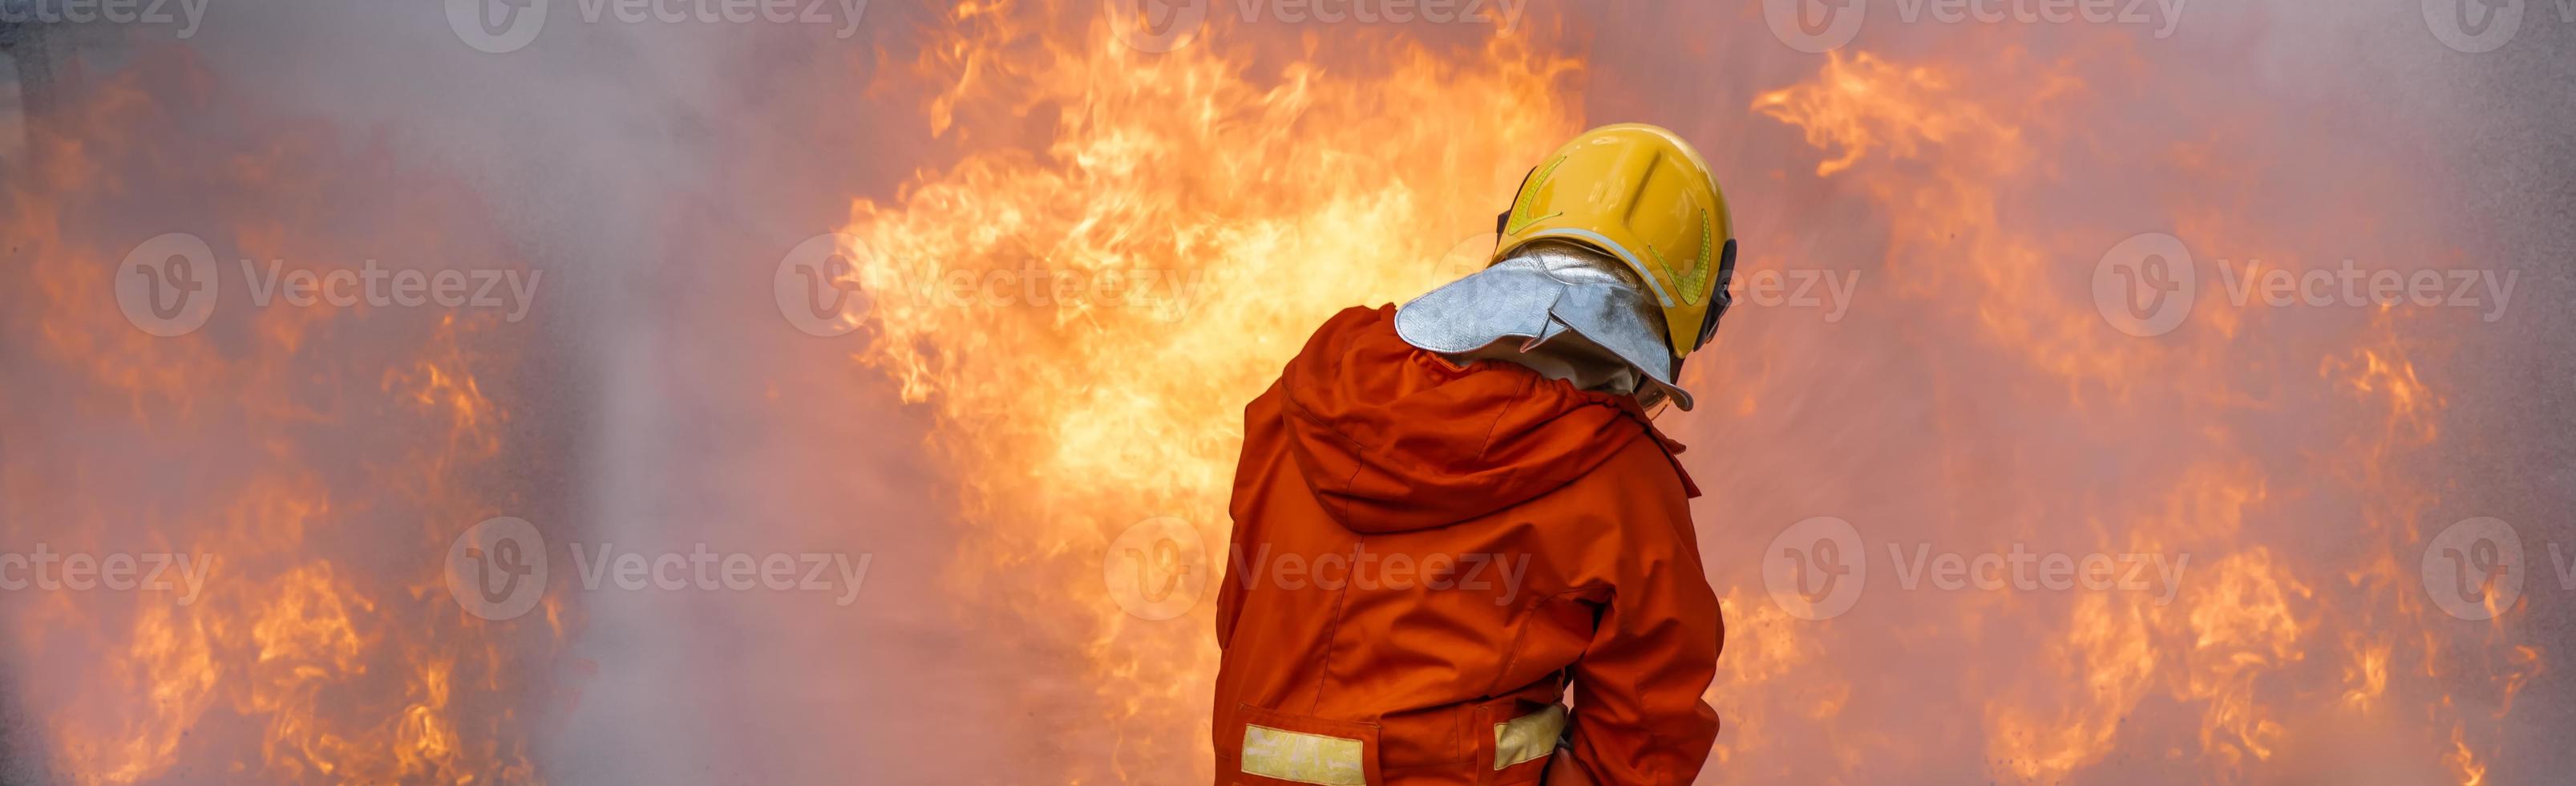 entrenamiento de rescate de bomberos para detener la llama ardiente, el bombero usa casco y traje uniforme de seguridad para protección contra quemaduras usando manguera con rociador de espuma de agua química. foto